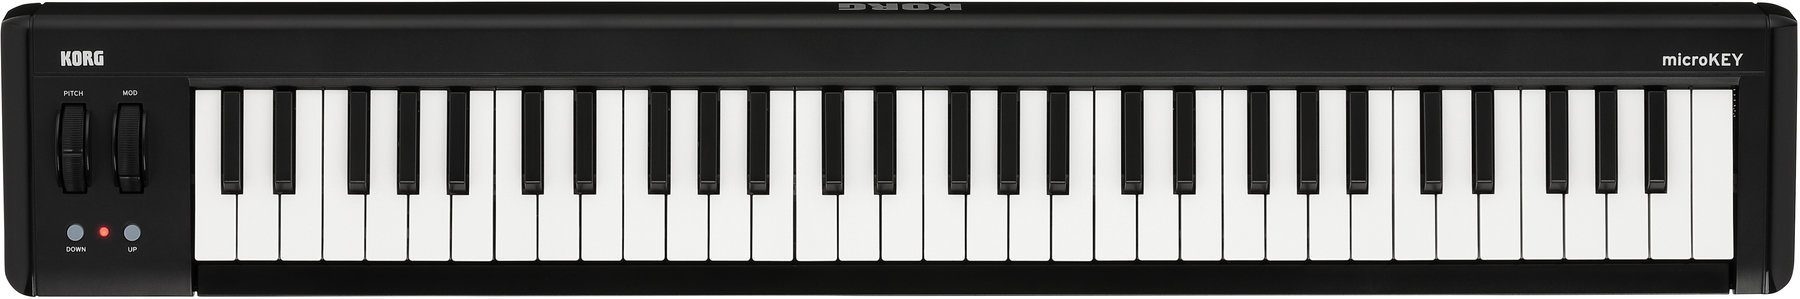 MIDI keyboard Korg MicroKEY2-61